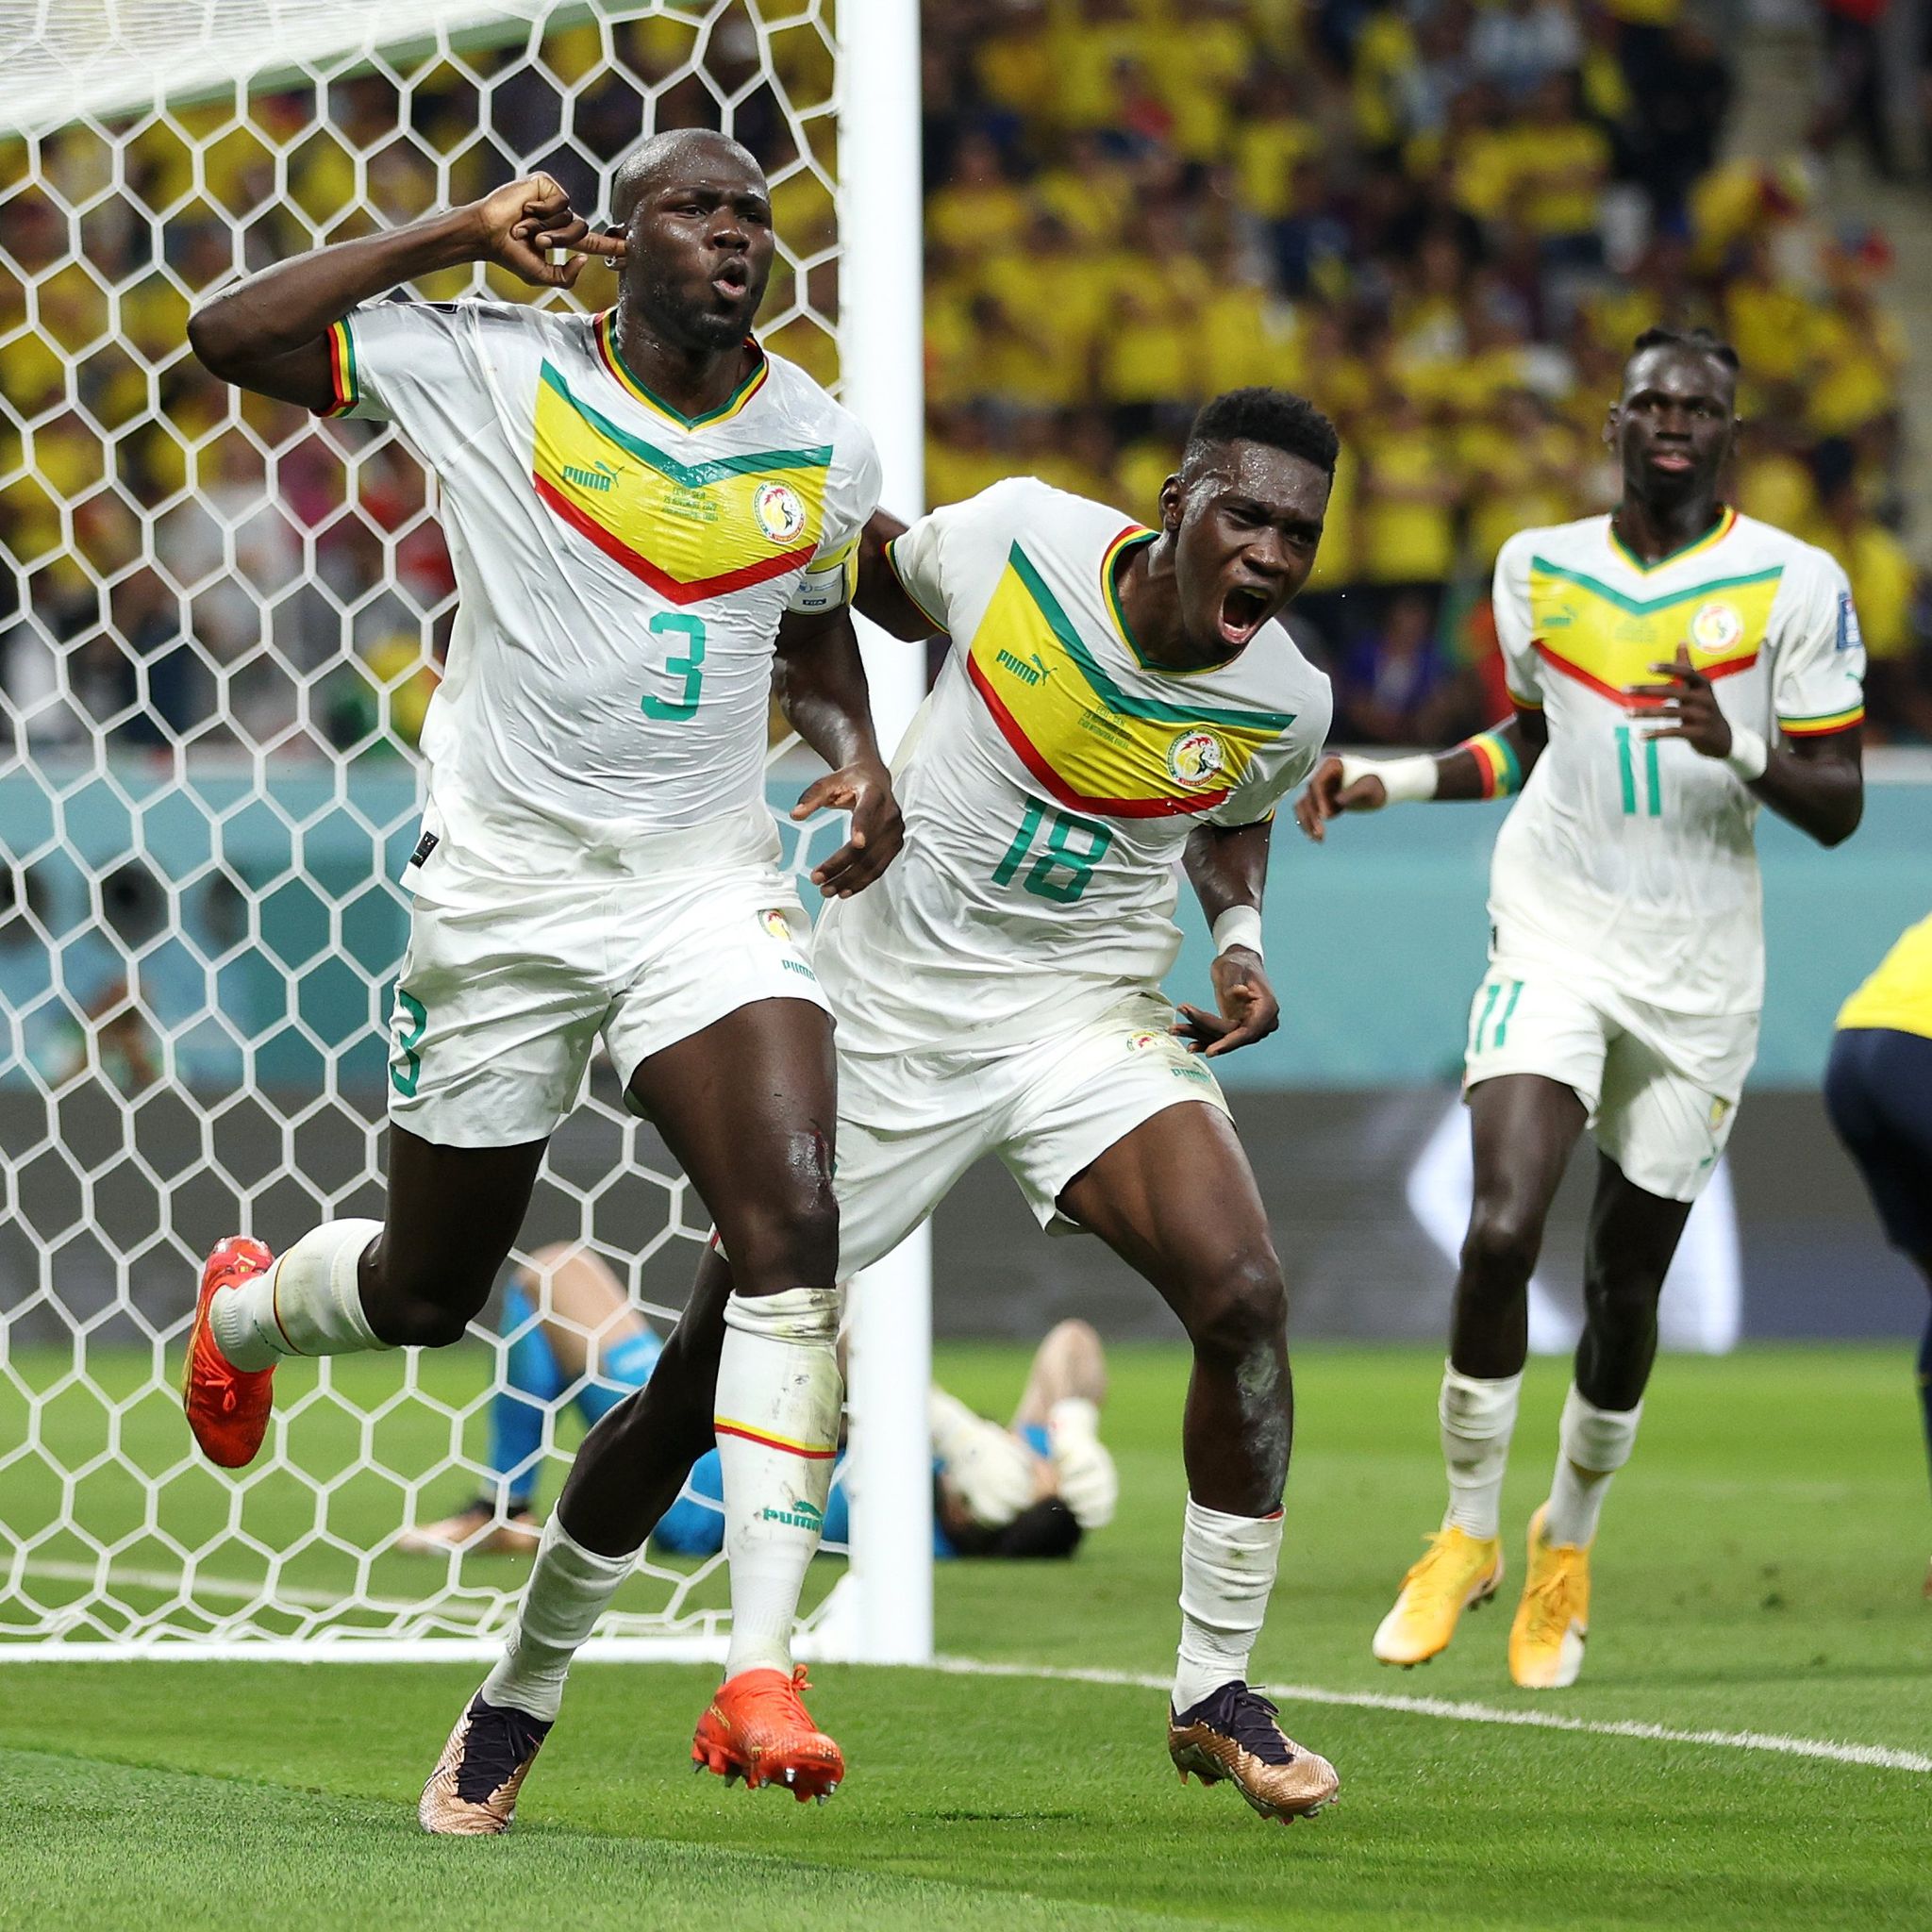 सेनेगल विश्वकपको नकआउट चरणमा, इक्वेडर बाहिरियो